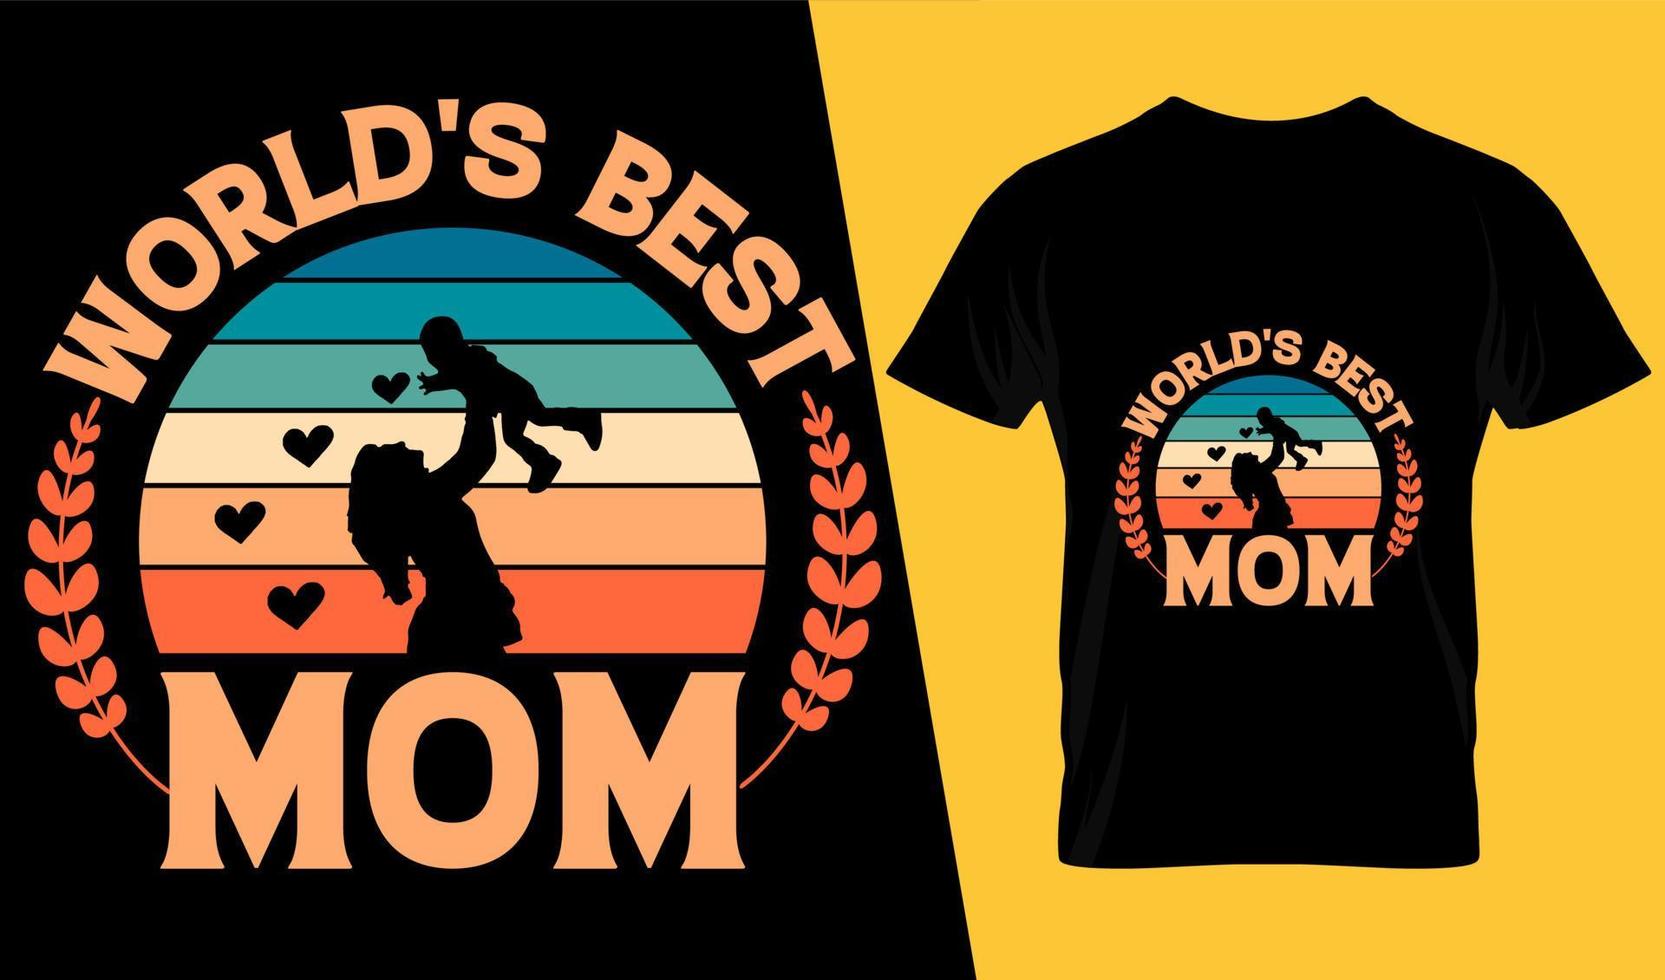 Word's best mom typography t shirt design vector